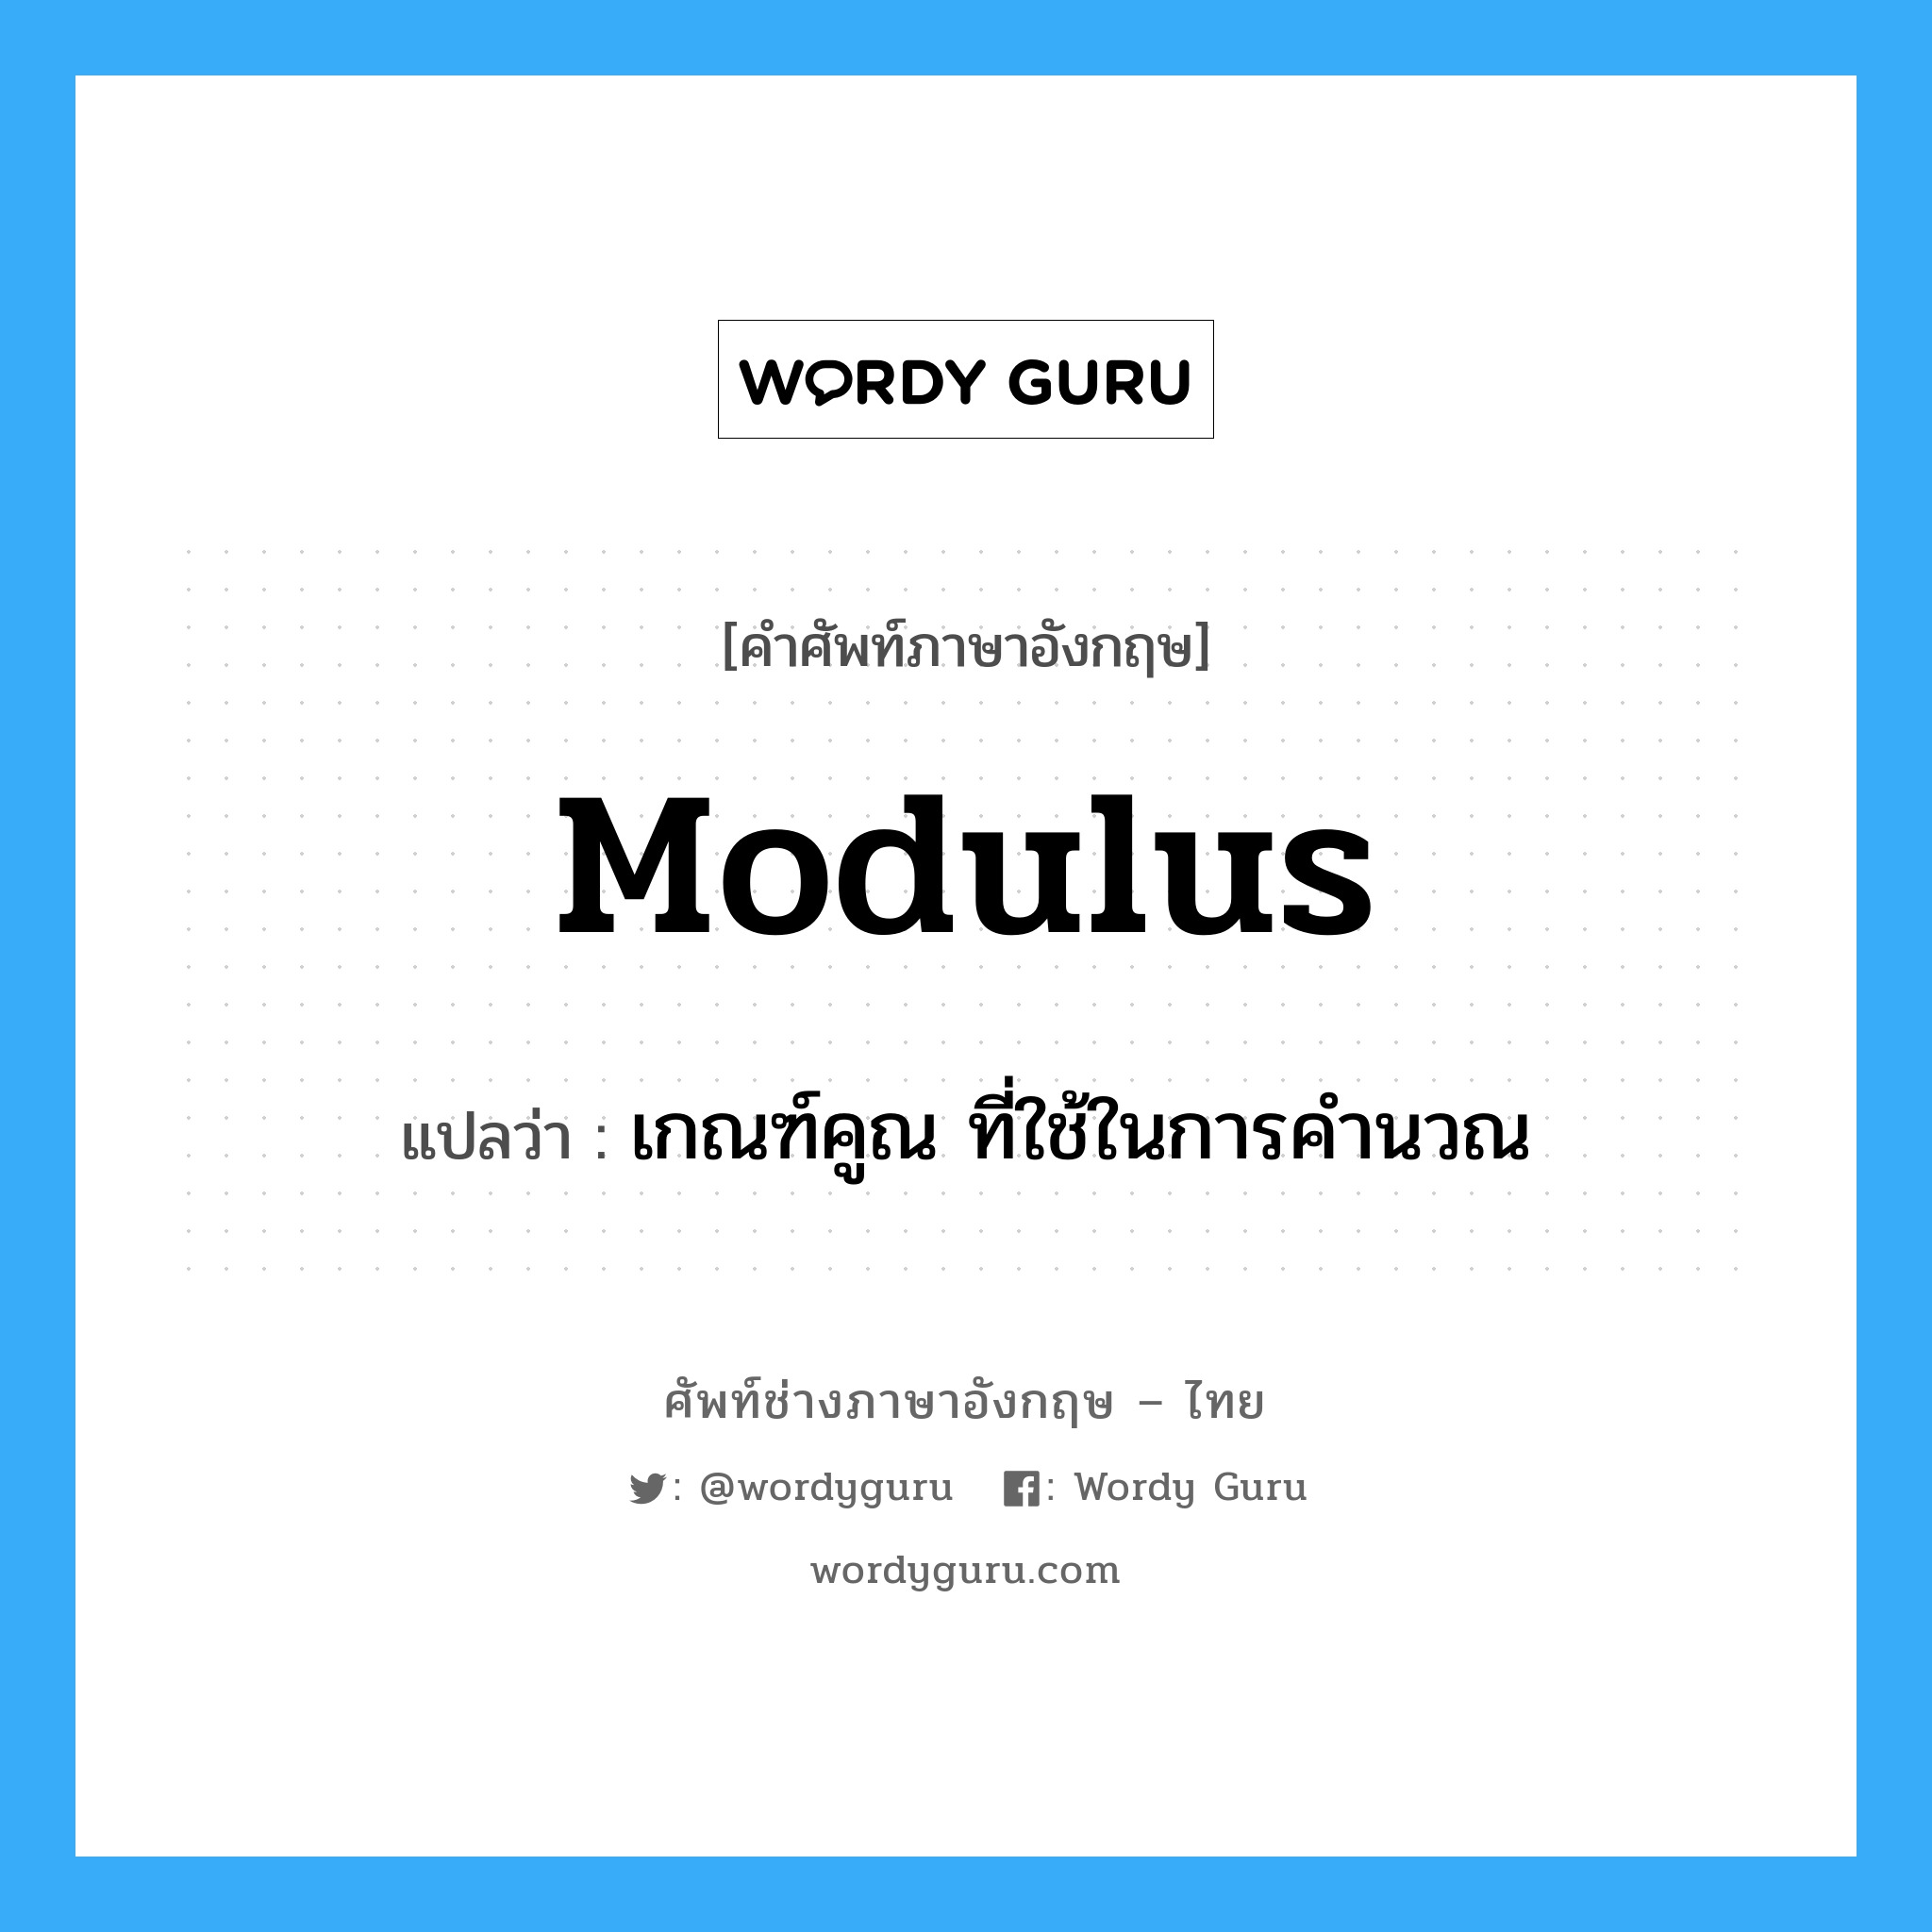 เกณฑ์คูณ ที่ใช้ในการคำนวณ ภาษาอังกฤษ?, คำศัพท์ช่างภาษาอังกฤษ - ไทย เกณฑ์คูณ ที่ใช้ในการคำนวณ คำศัพท์ภาษาอังกฤษ เกณฑ์คูณ ที่ใช้ในการคำนวณ แปลว่า modulus